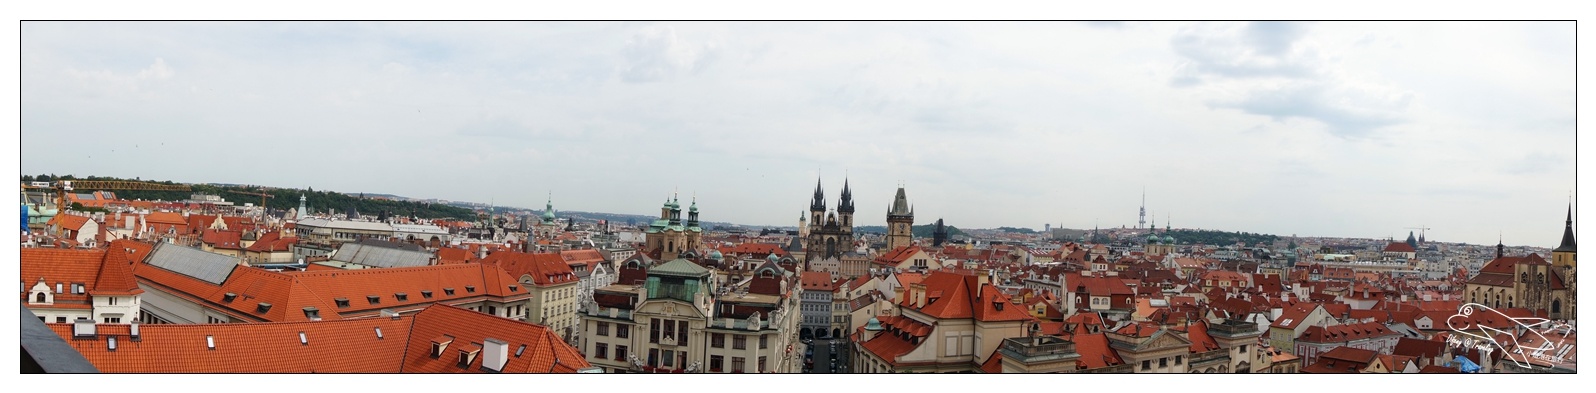 捷克景點|布拉格最美圖書館・克萊門特學院，Klementinum世界絕美巴洛克圖書館～布拉格最佳景觀拍照點～